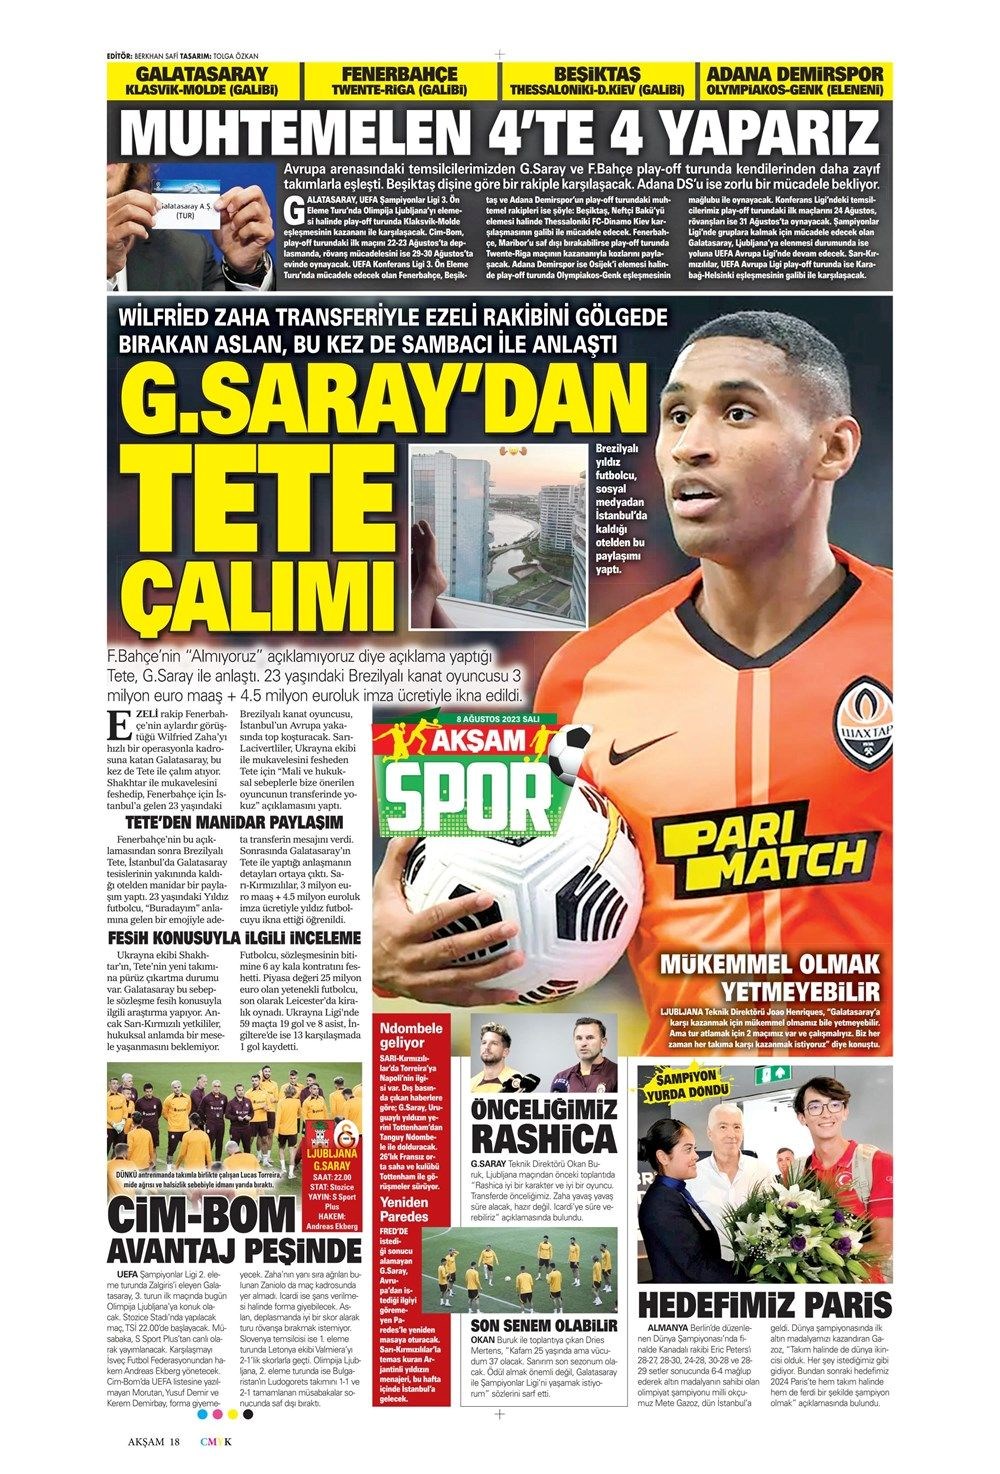 Galatasaray'dan Tete çalımı, 8 Ağustos 2023 spor manşetleri - Son Dakika  Spor Haberleri